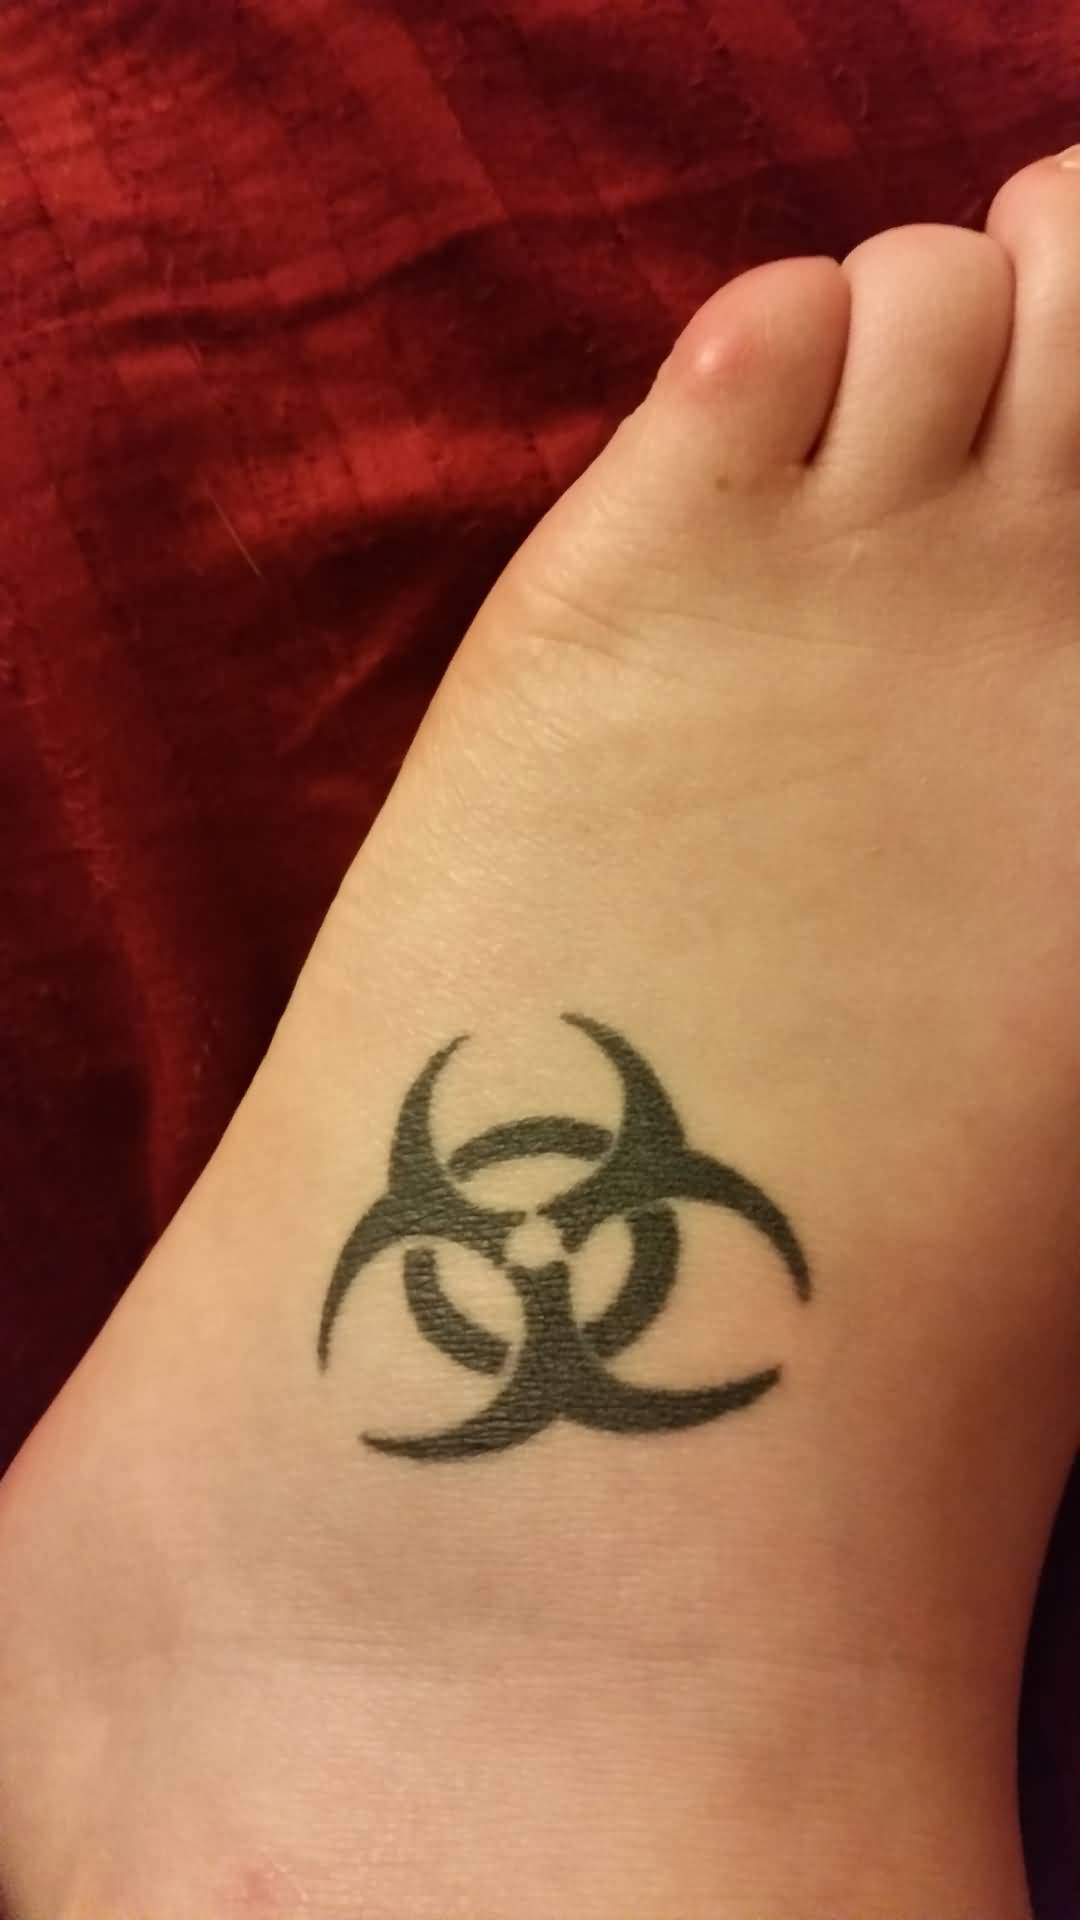 Biohazard Symbol Tattoo On Foot